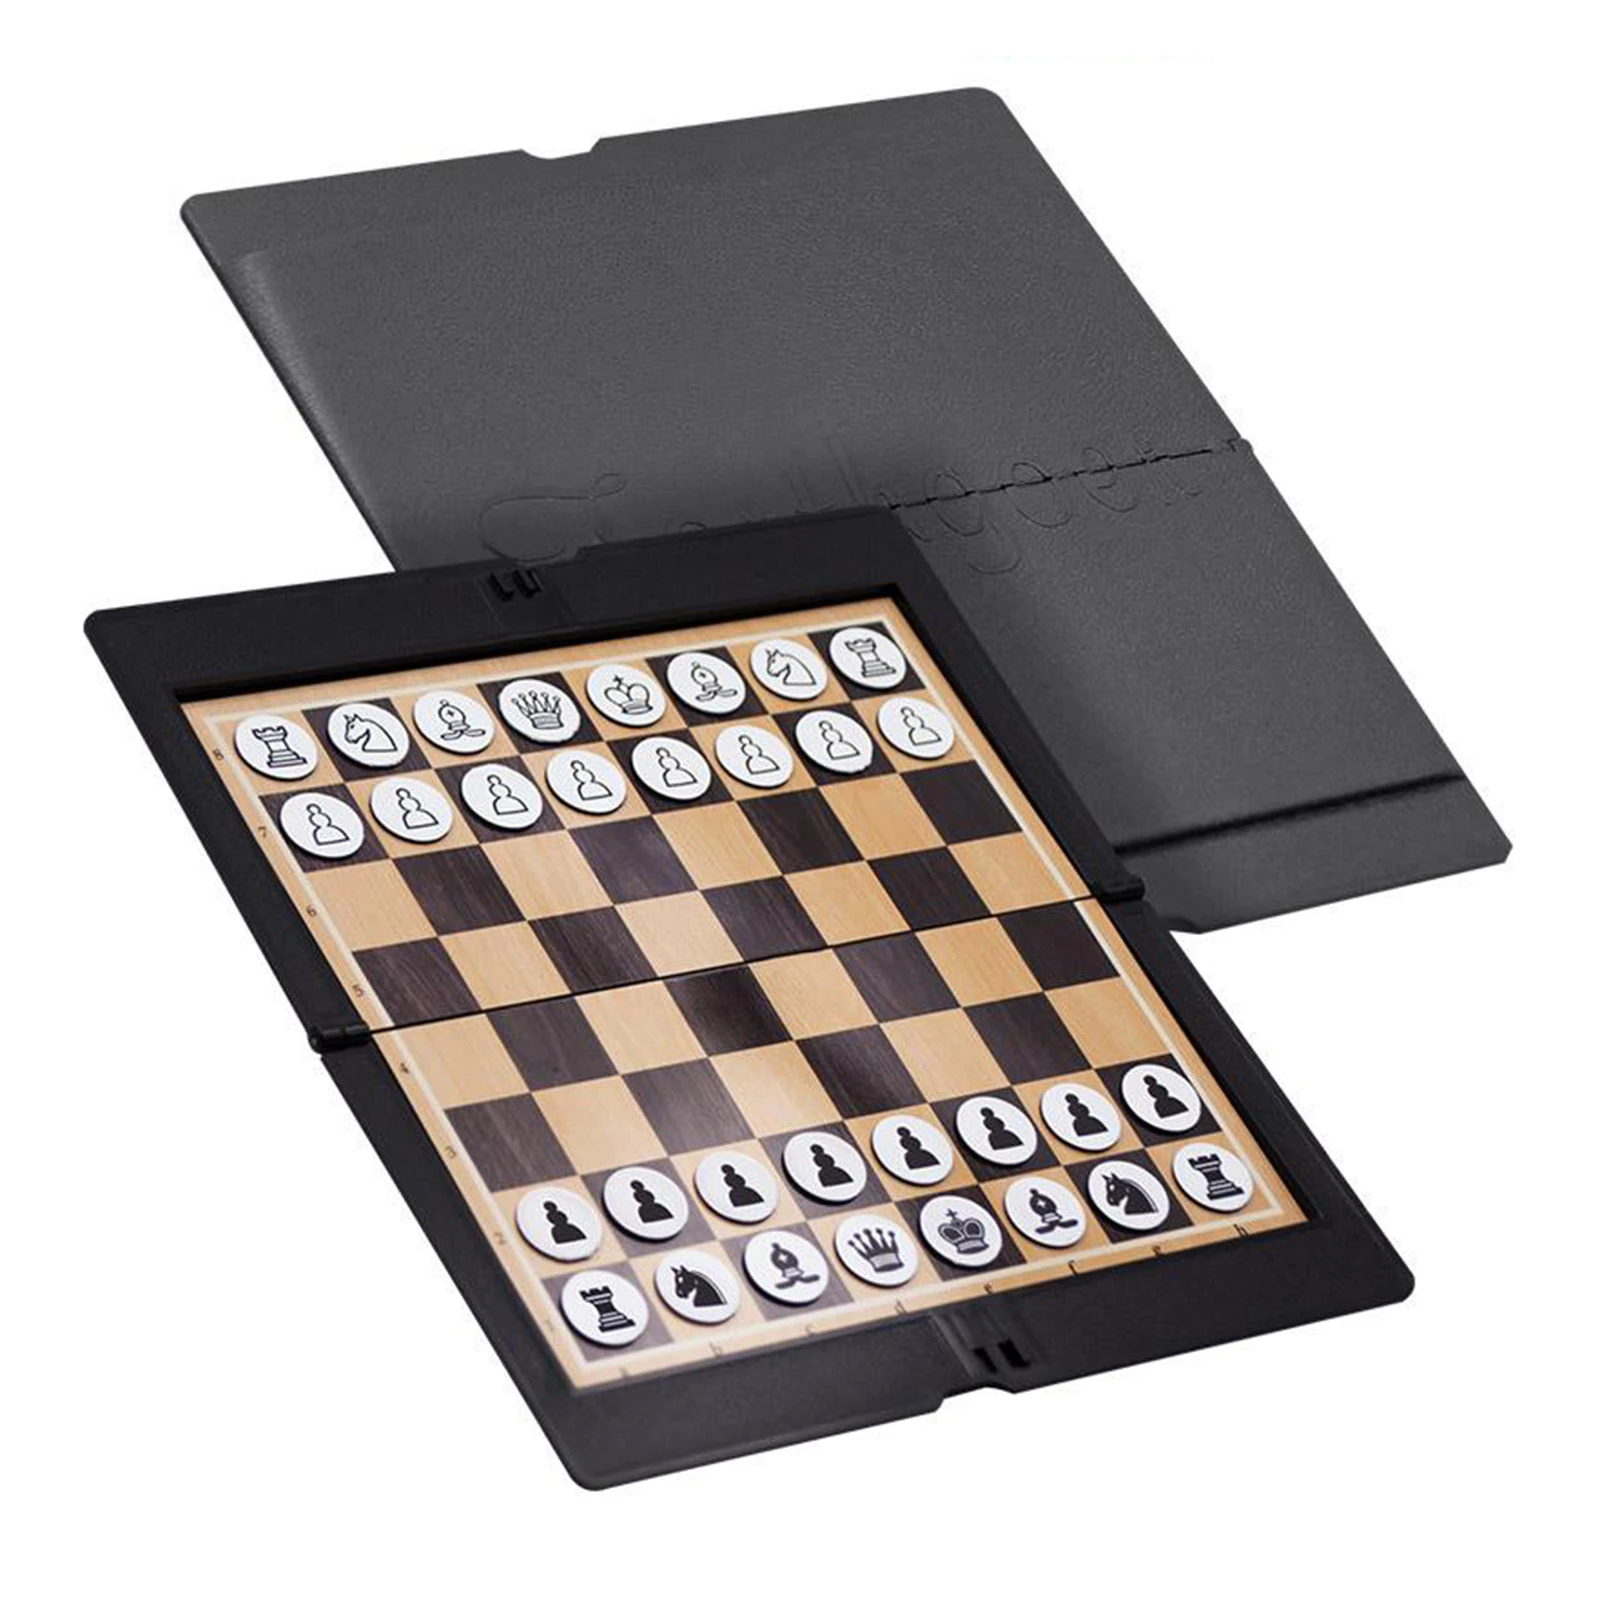 juego de ajedrez para viajes tablero de ajedrez plegable con imán viajes Ajedrez plegable ideal como regalo para familia 32 x 32 cm niños y adultos 